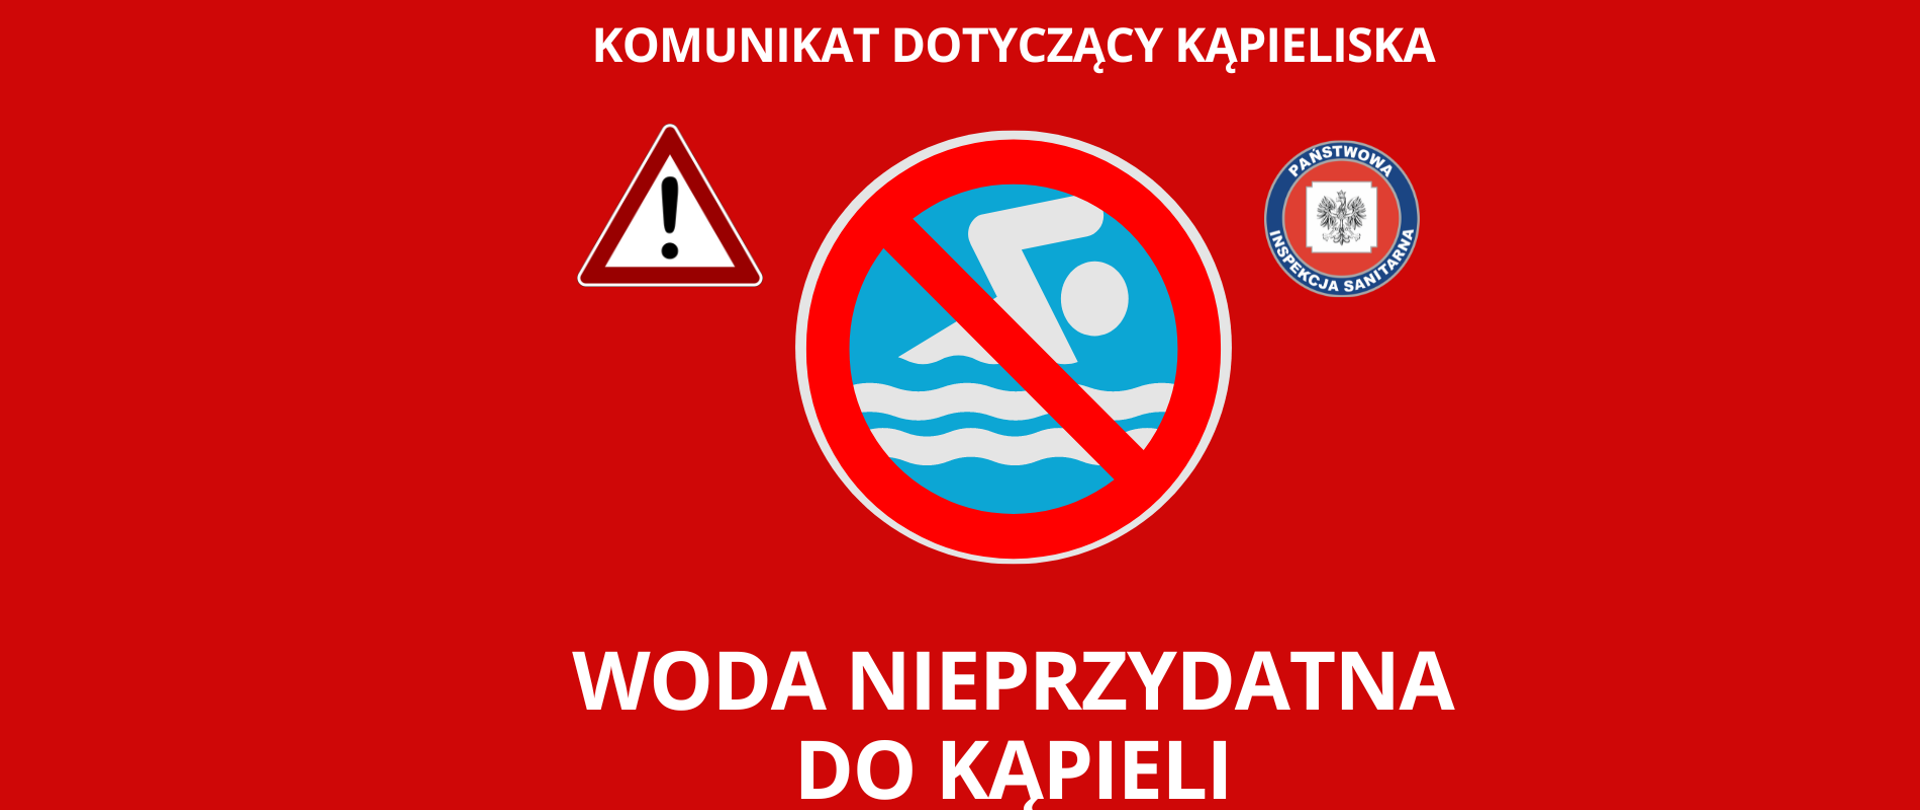 Czerwone tło komunikatu biały napis "Komunikat dotyczący kąpieliska - woda nie przydatna do kąpieli." Przekreślona ikona białego pływaka na niebieskim tle. Ikony logo Inspekcji Sanitarnej i Znak ostrzegawczy trójkątny z czarnym wykrzyknikiem na białym tle. 